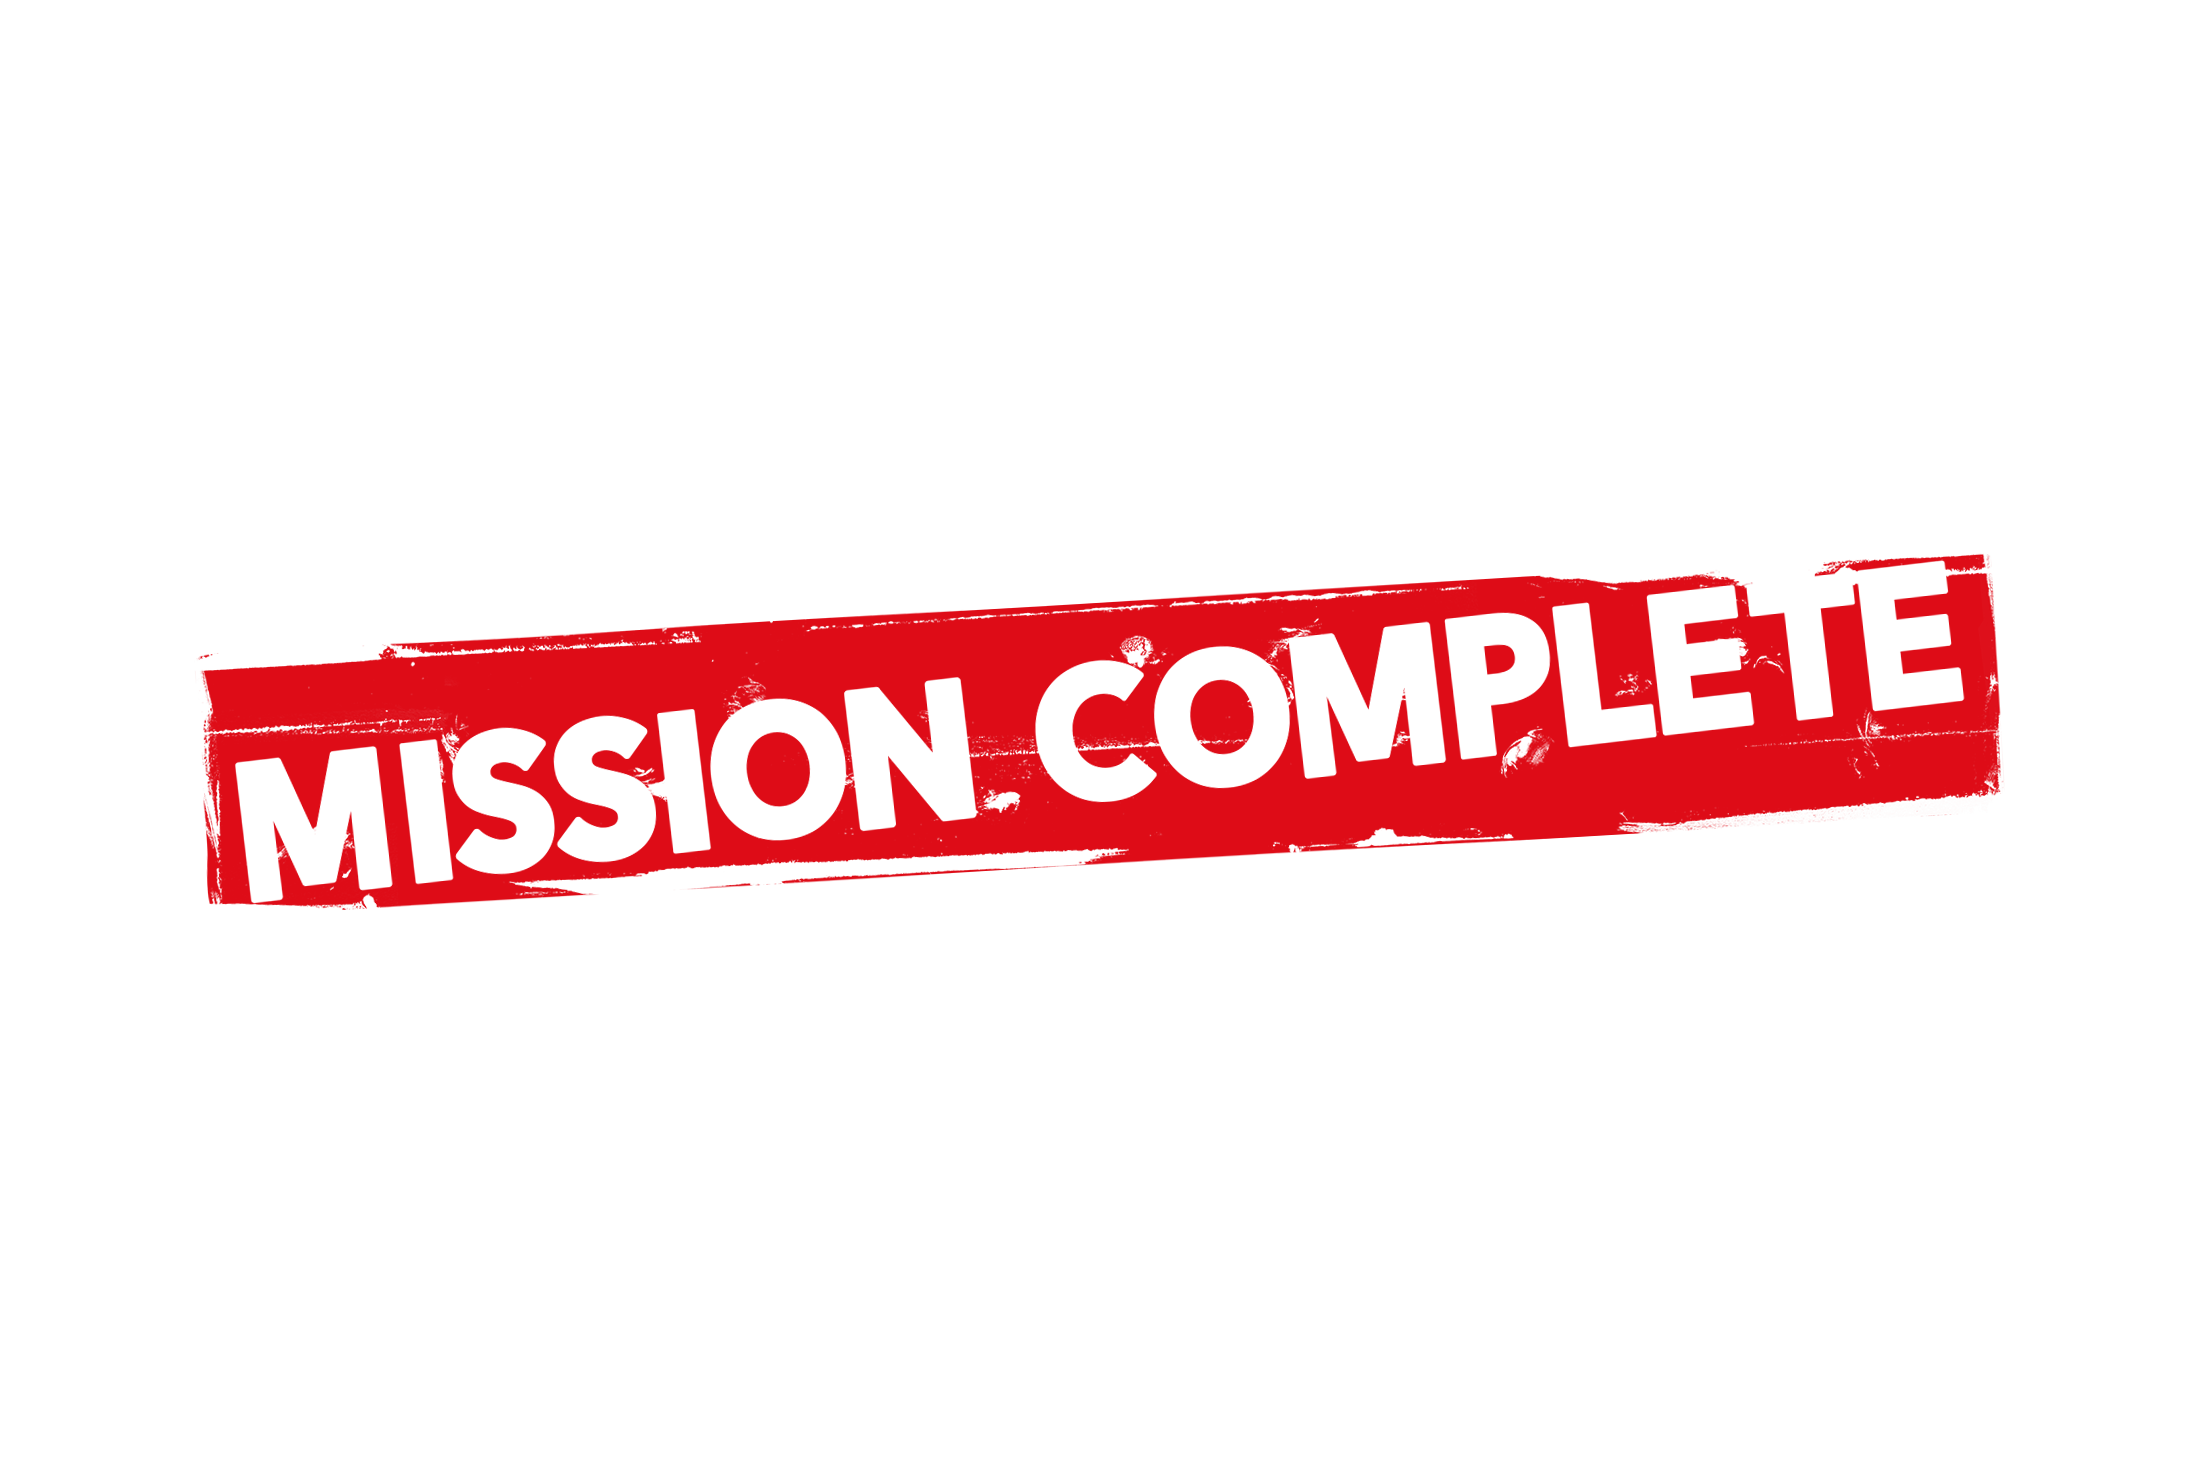 Grunge mission complete label PSD